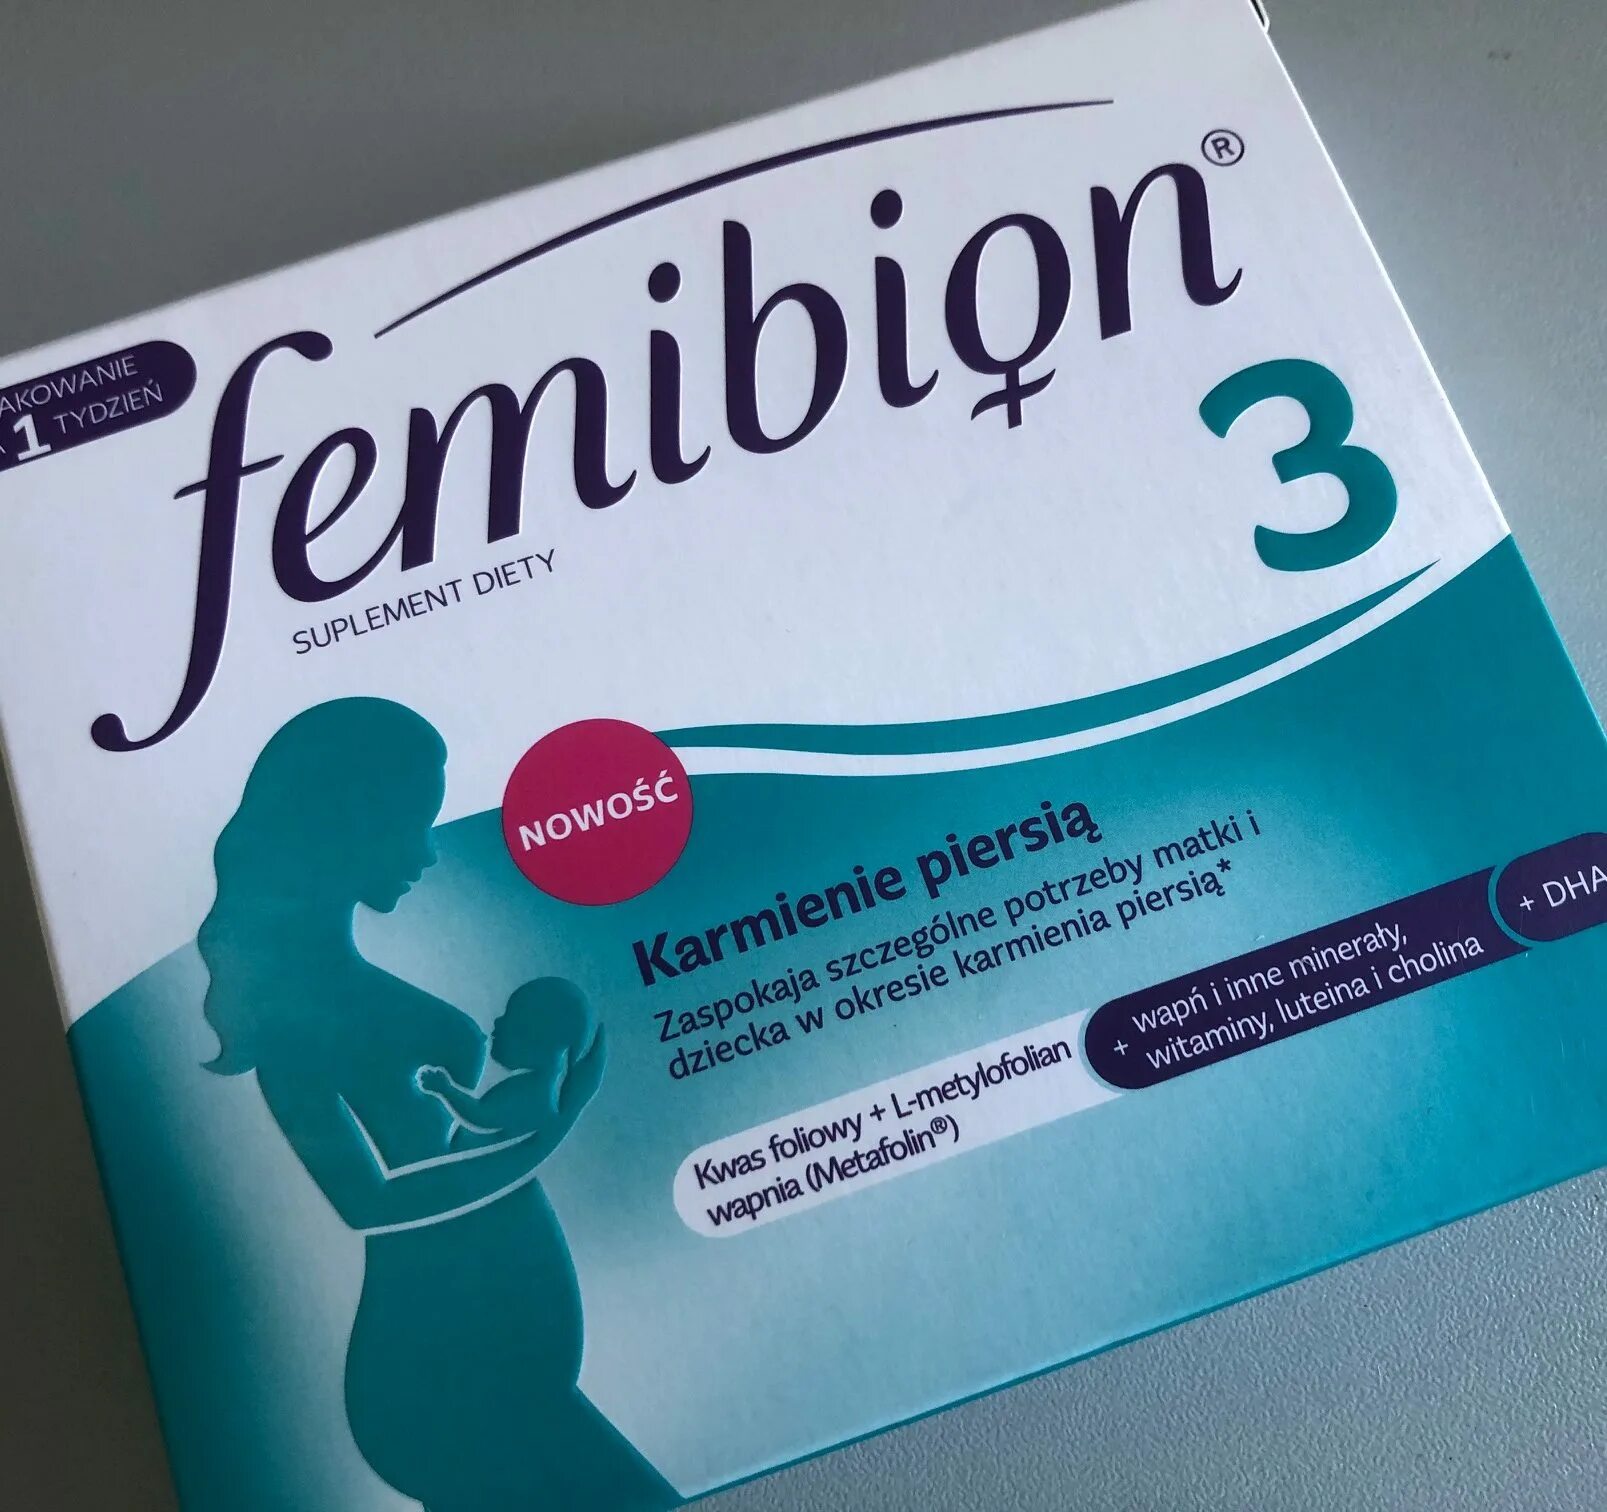 Фемибион 3. Таблетки для беременных фемибион 3 триместр. Витамины для беременных 3 триместр фемибион 3. Витамины в 3 триместре беременности фемибион.